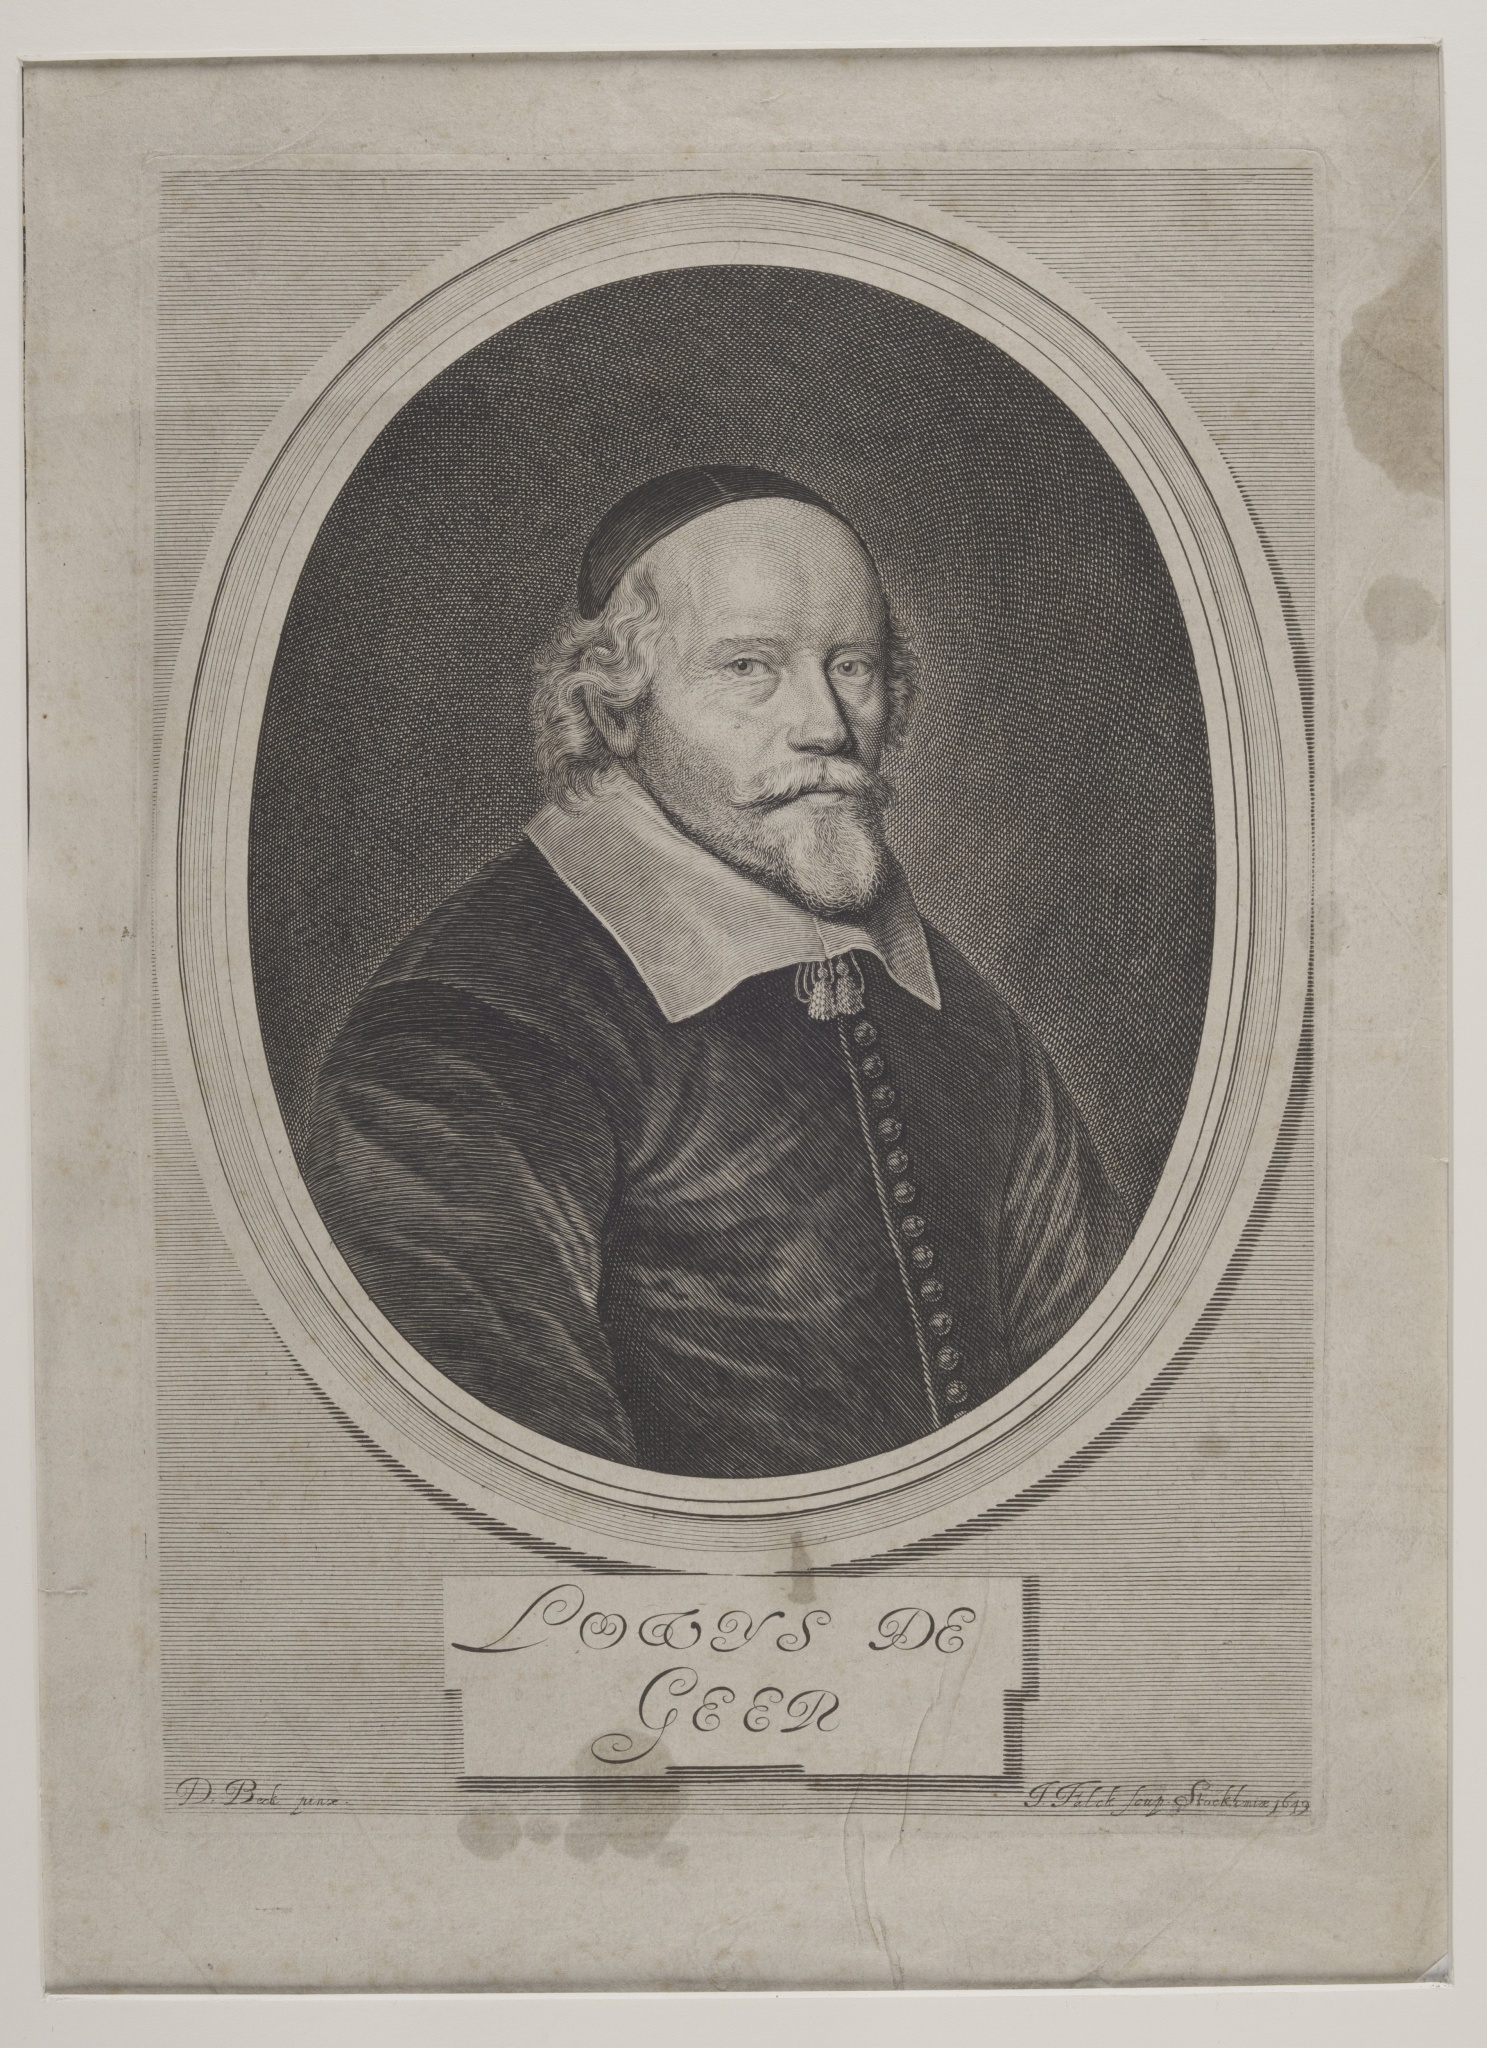 Portrait de Louis de Geer